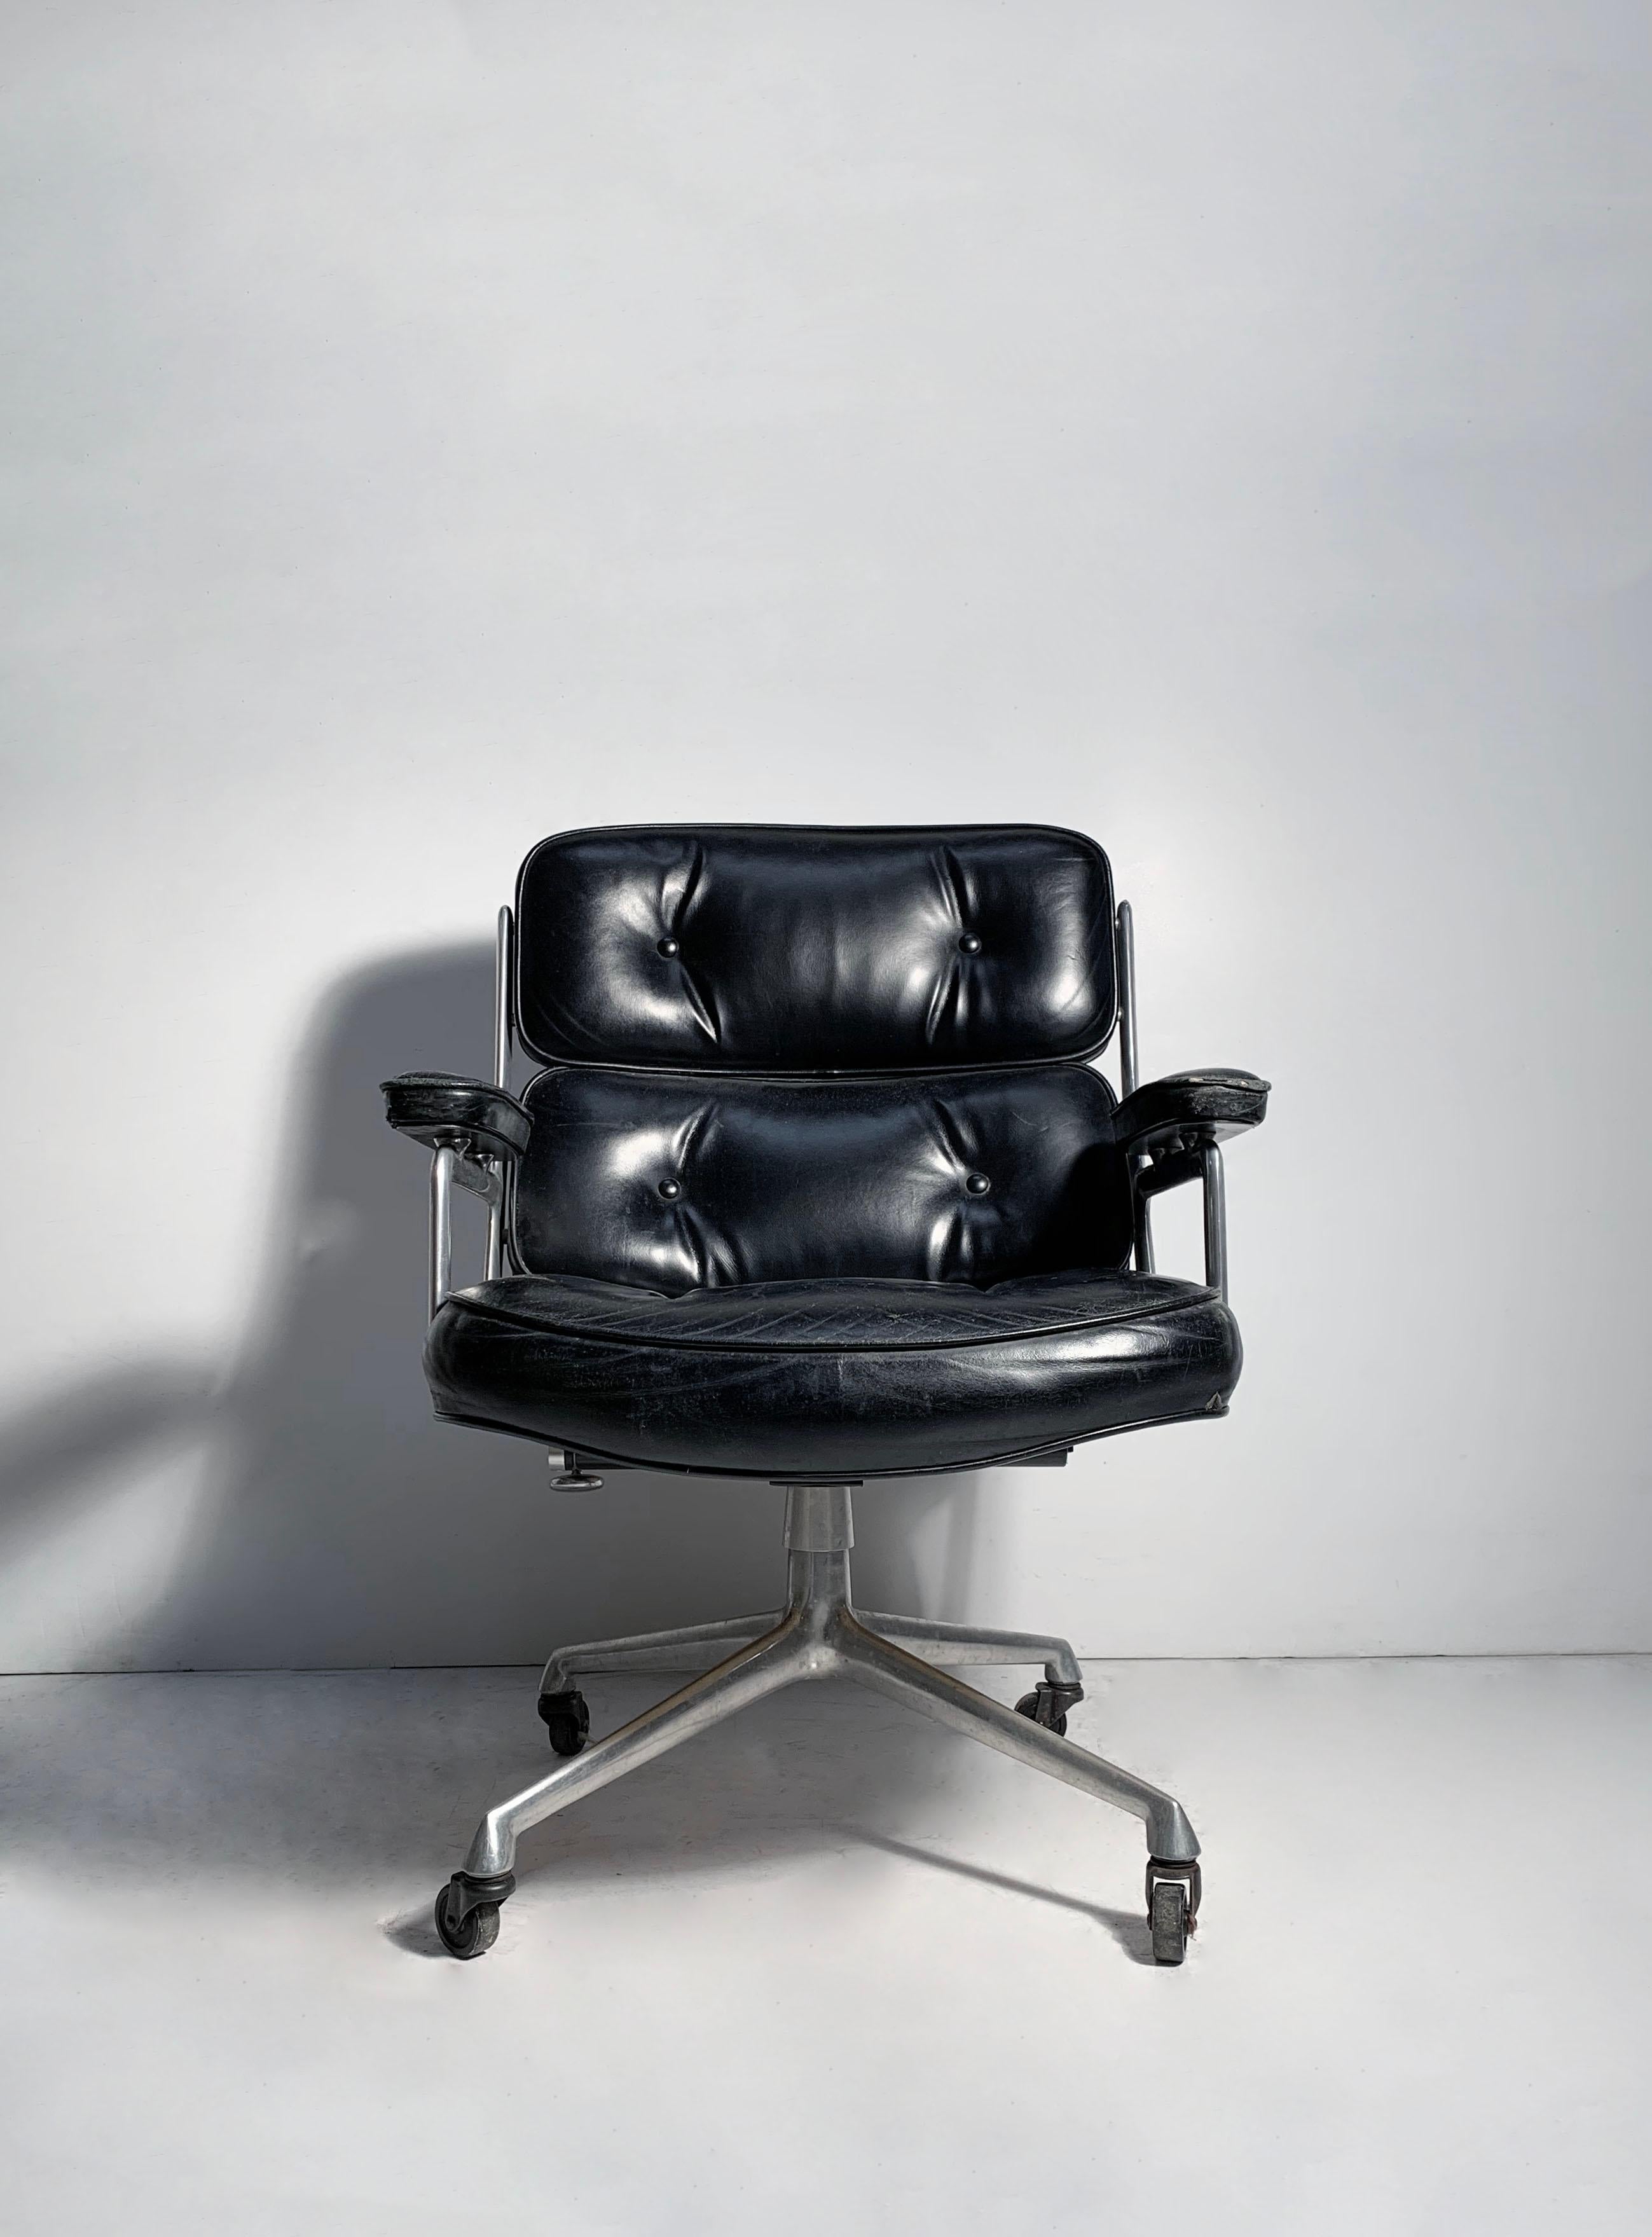 Vintage Time Life Desk Chair ES104 von Charles Eames für Herman Miller. Das scheint ein schönes frühes Beispiel des Designs zu sein.
Ich werde die Abmessungen des Stuhls noch einmal überprüfen.

Abnutzung des Originalleders wie abgebildet. Entweder